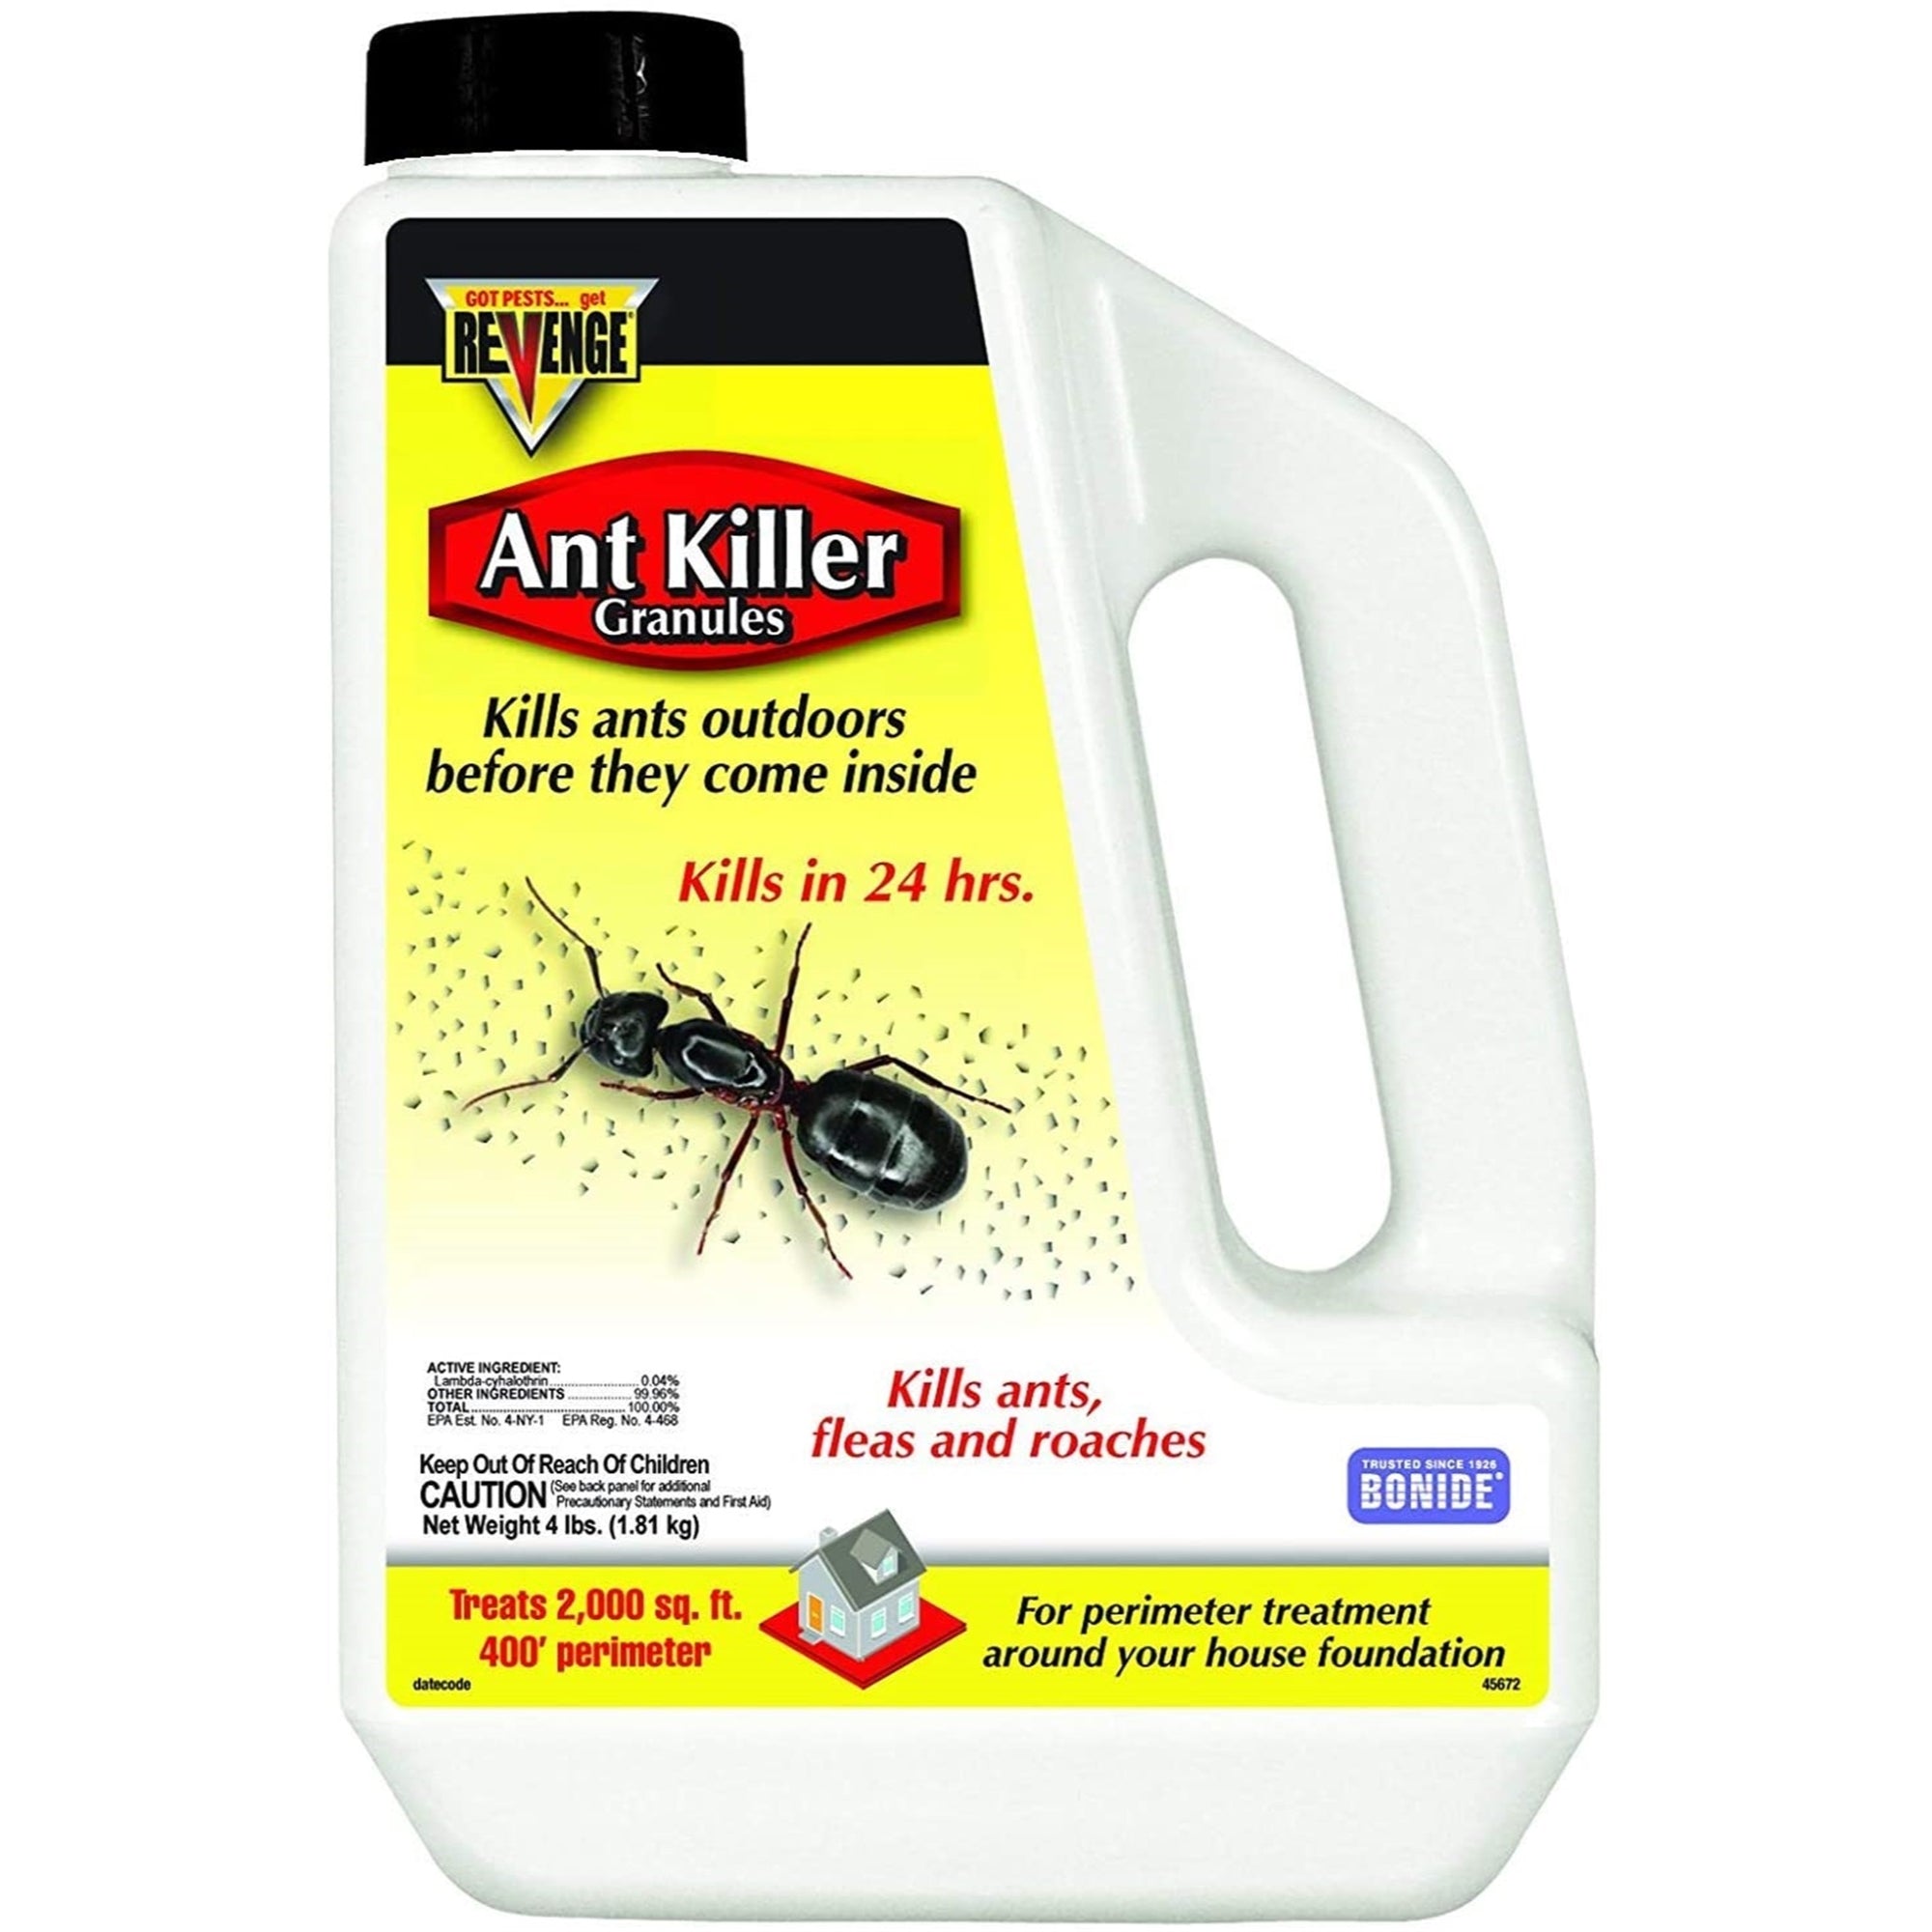 Bonide Ant Killer Granules, 4 lb treats up to 2,000 sq ft